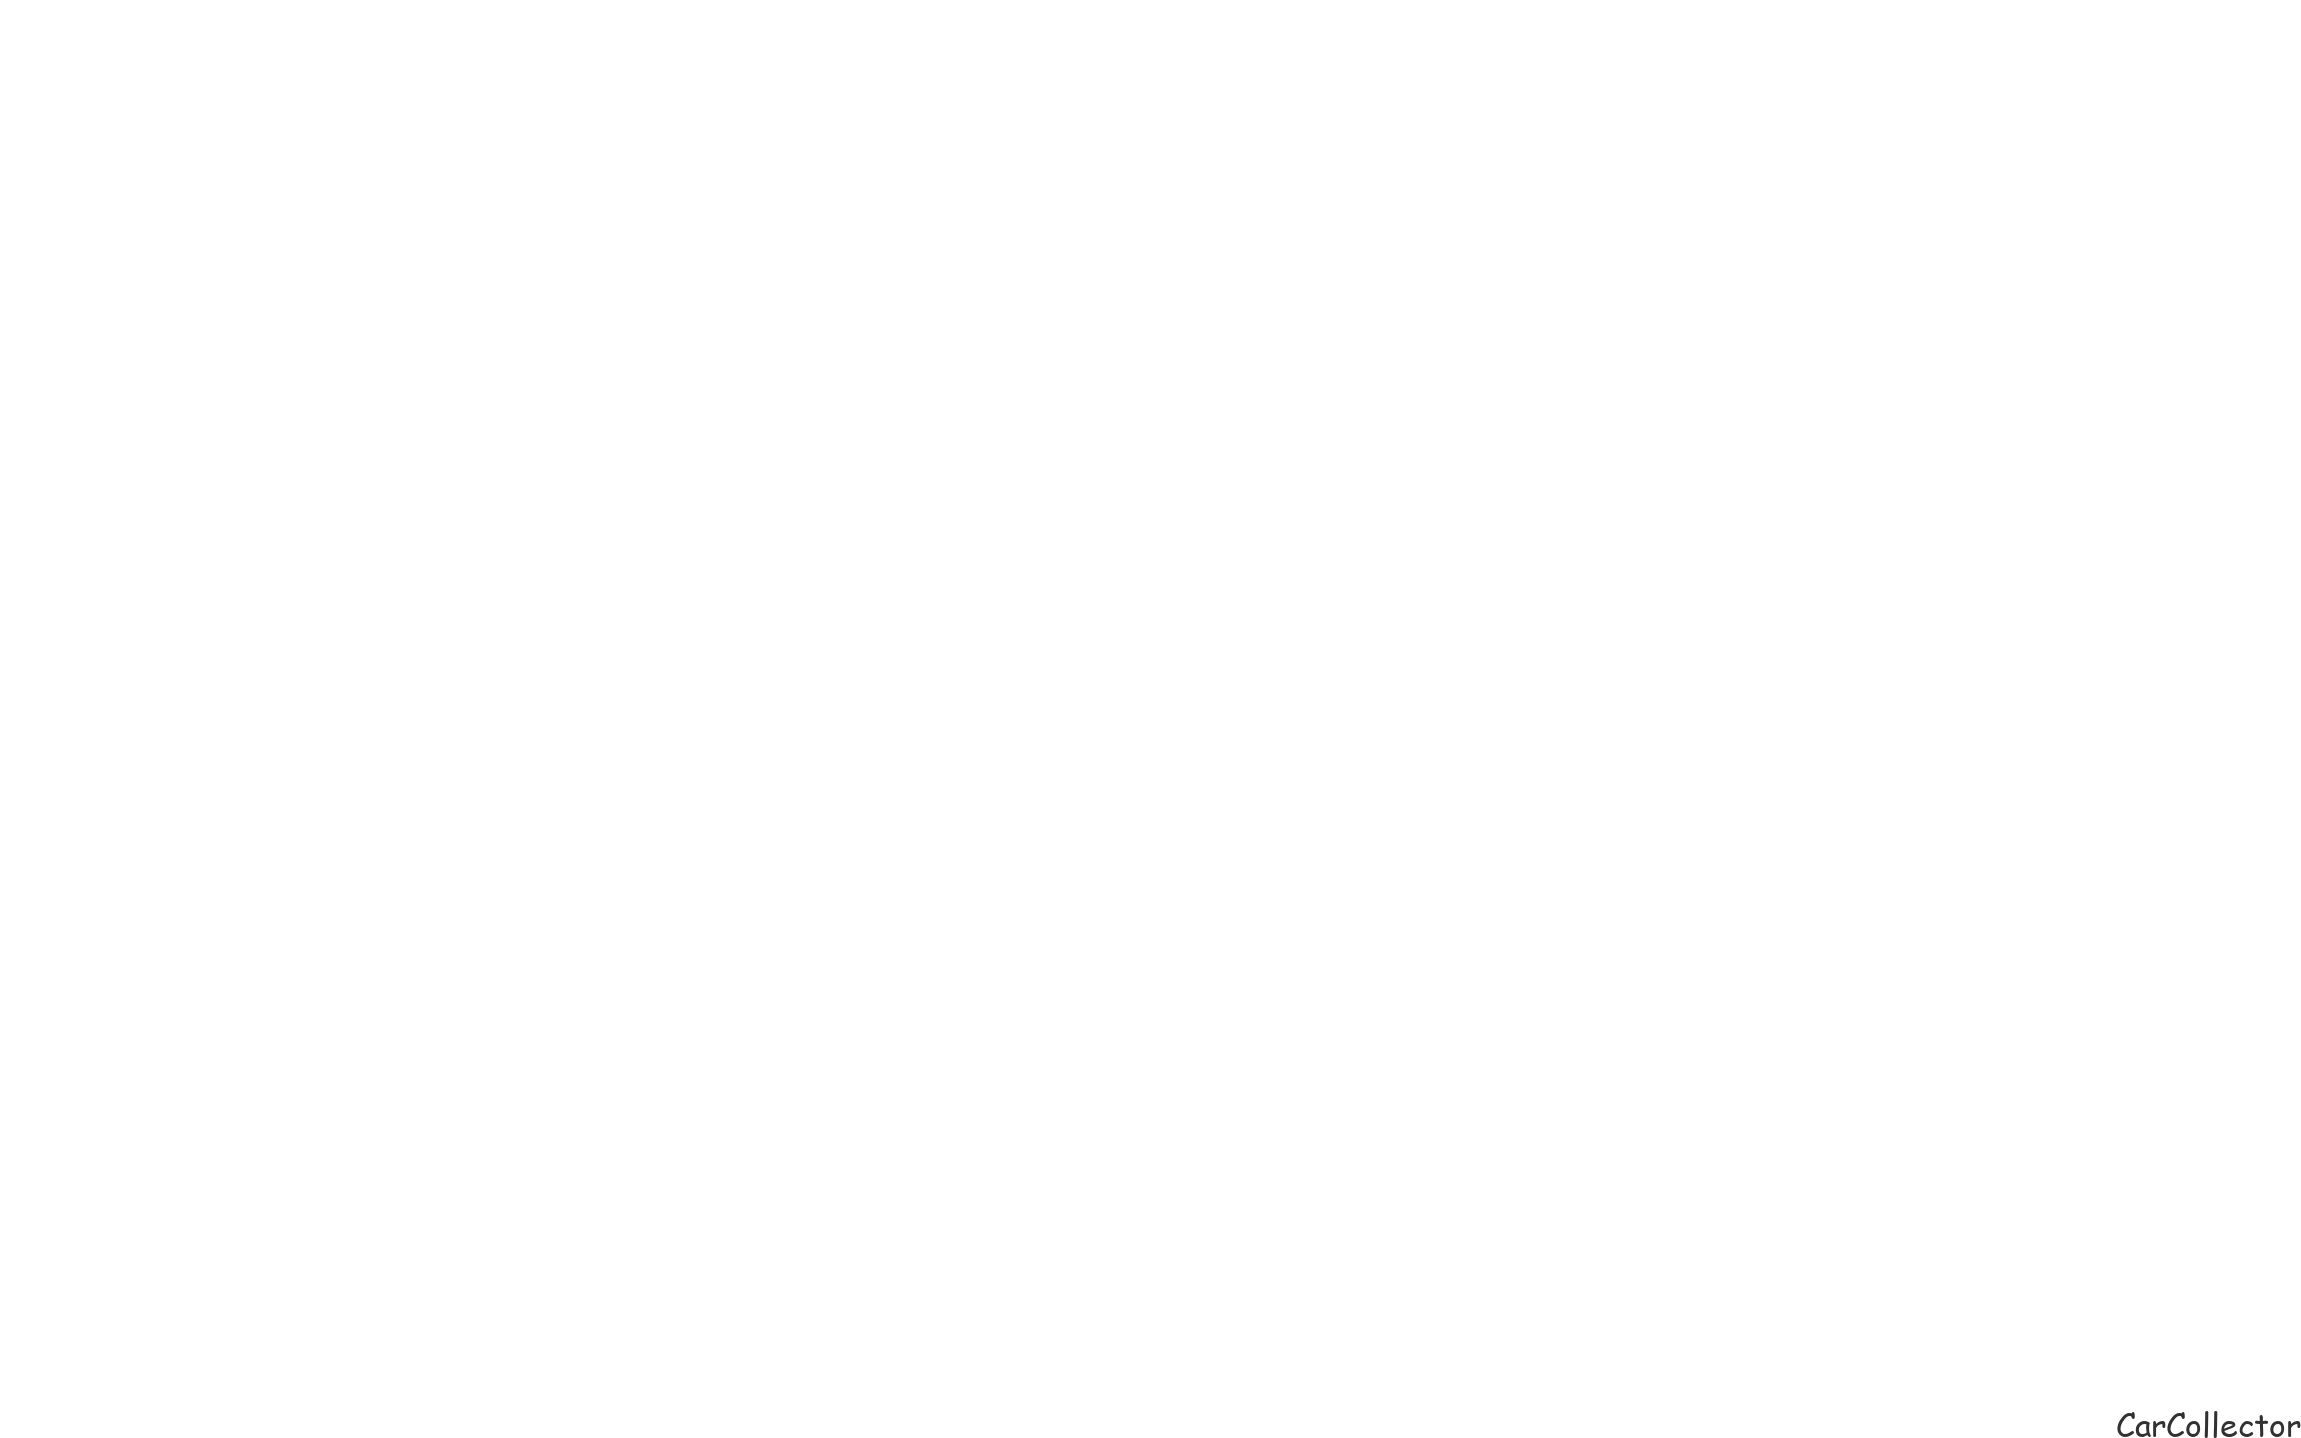 Car Collector Costa Rica